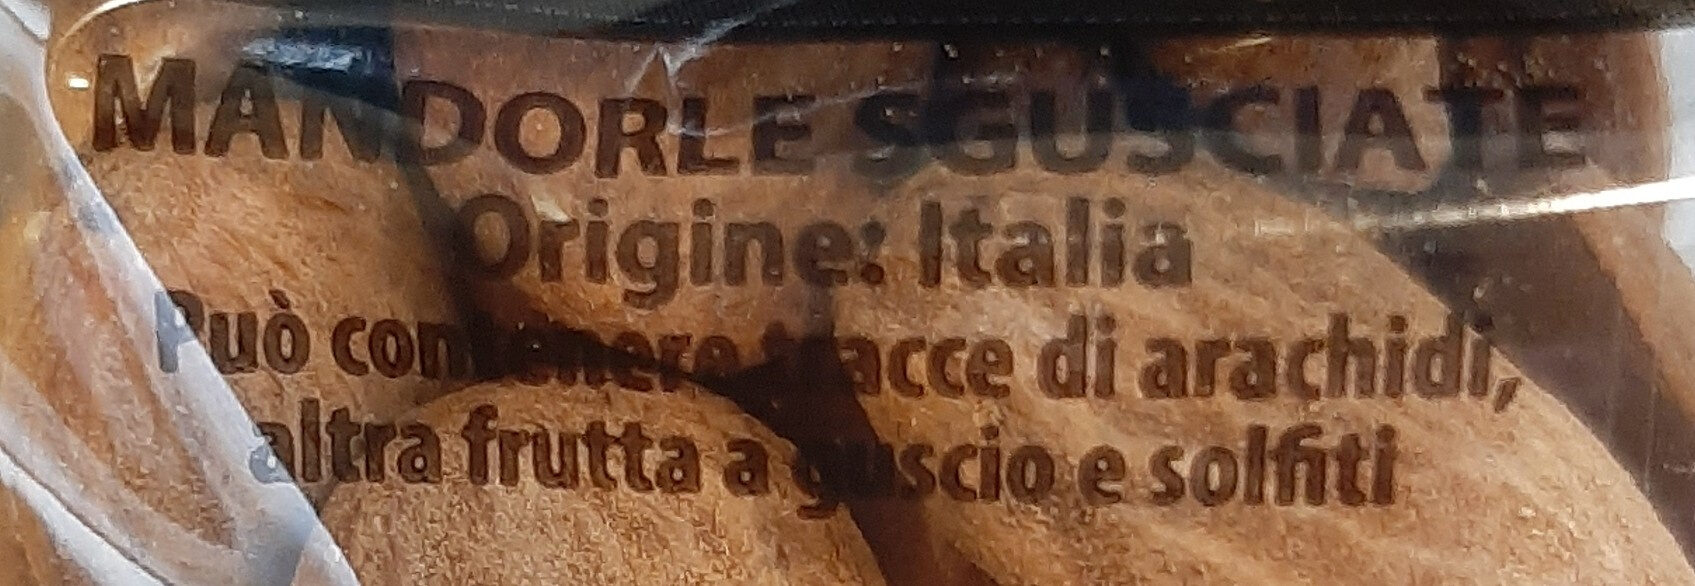 Mandorle di Sicilia - Ingredienti